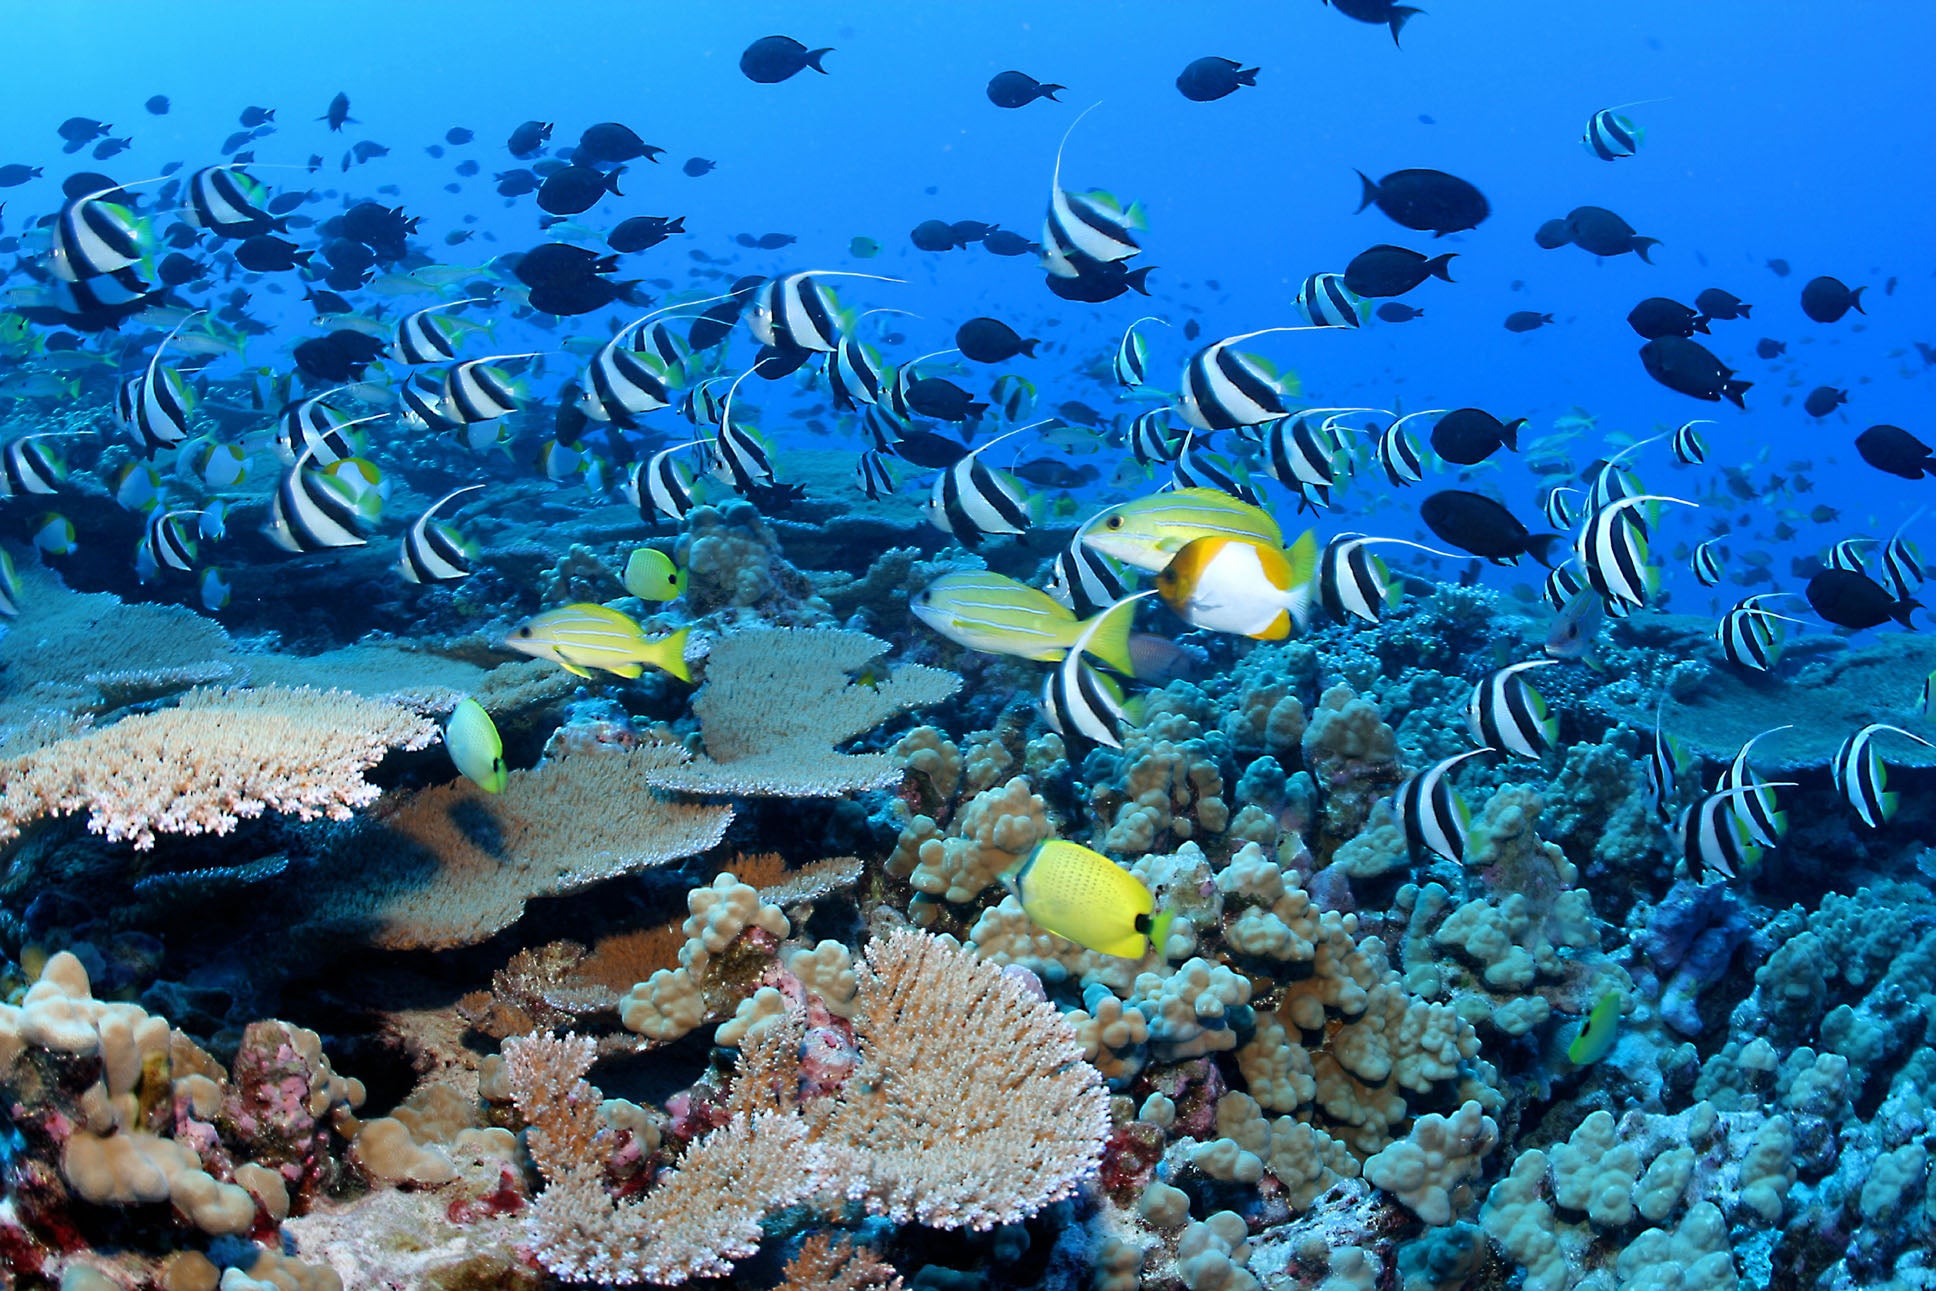 Resif balıkları Papahnaumokukea Deniz Ulusal Anıtı'nın sularında yüzüyor.